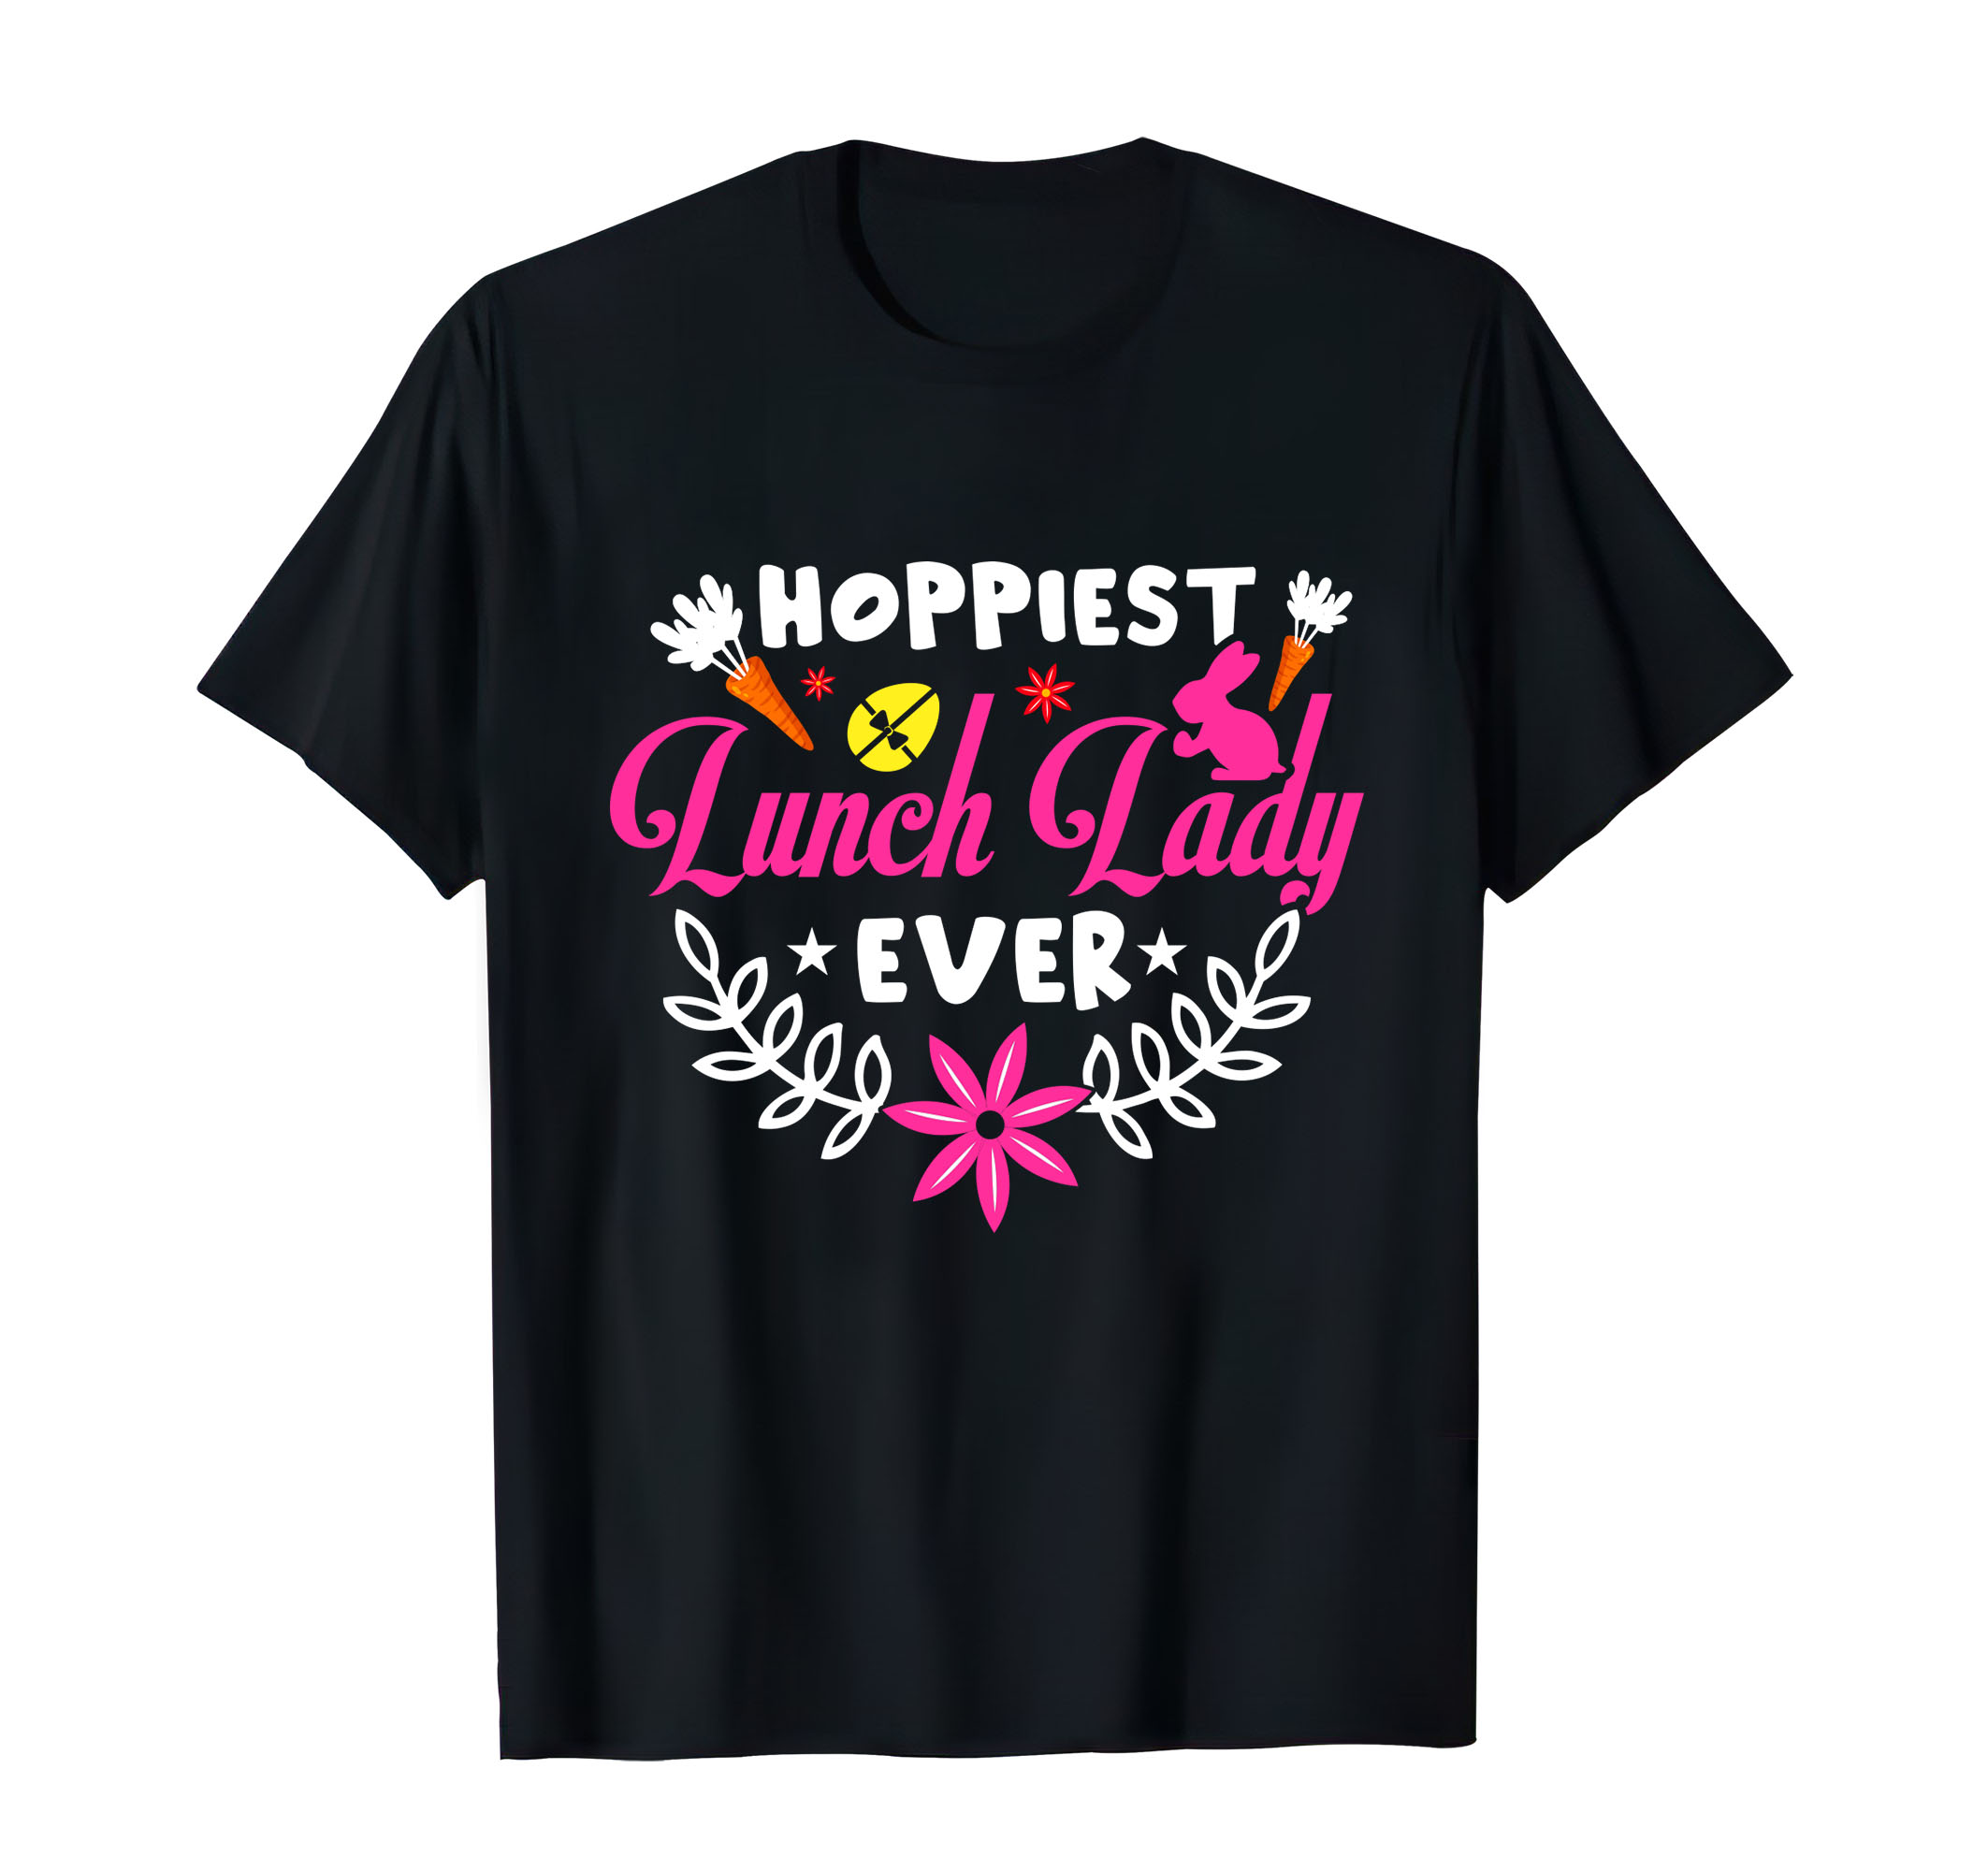 Easter T Shirt Design Bundle for $7 Only